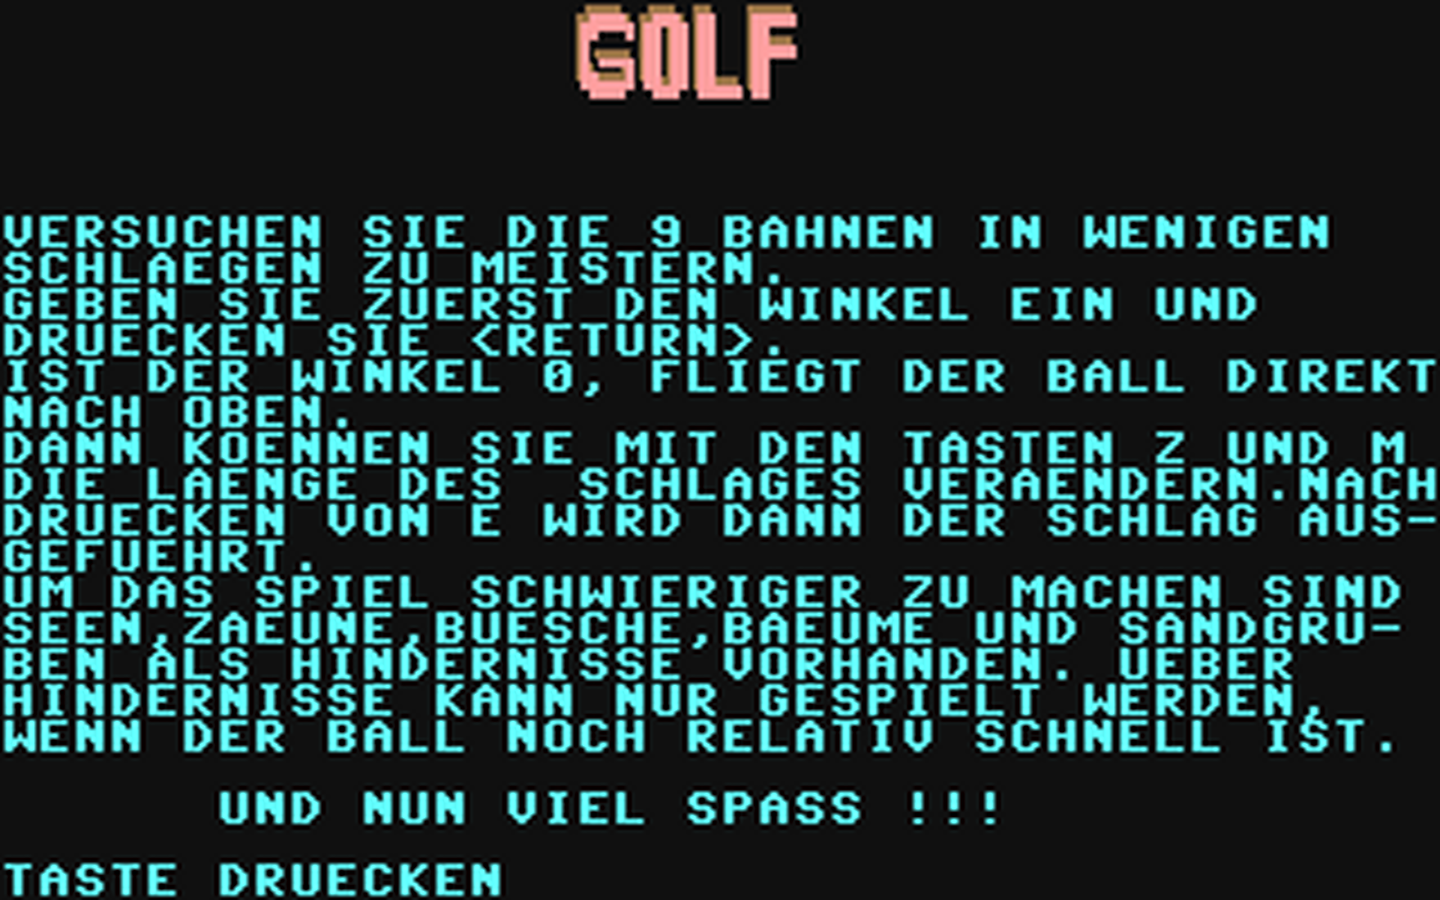 C64 GameBase Golf Tronic_Verlag_GmbH/Homecomputer 1984